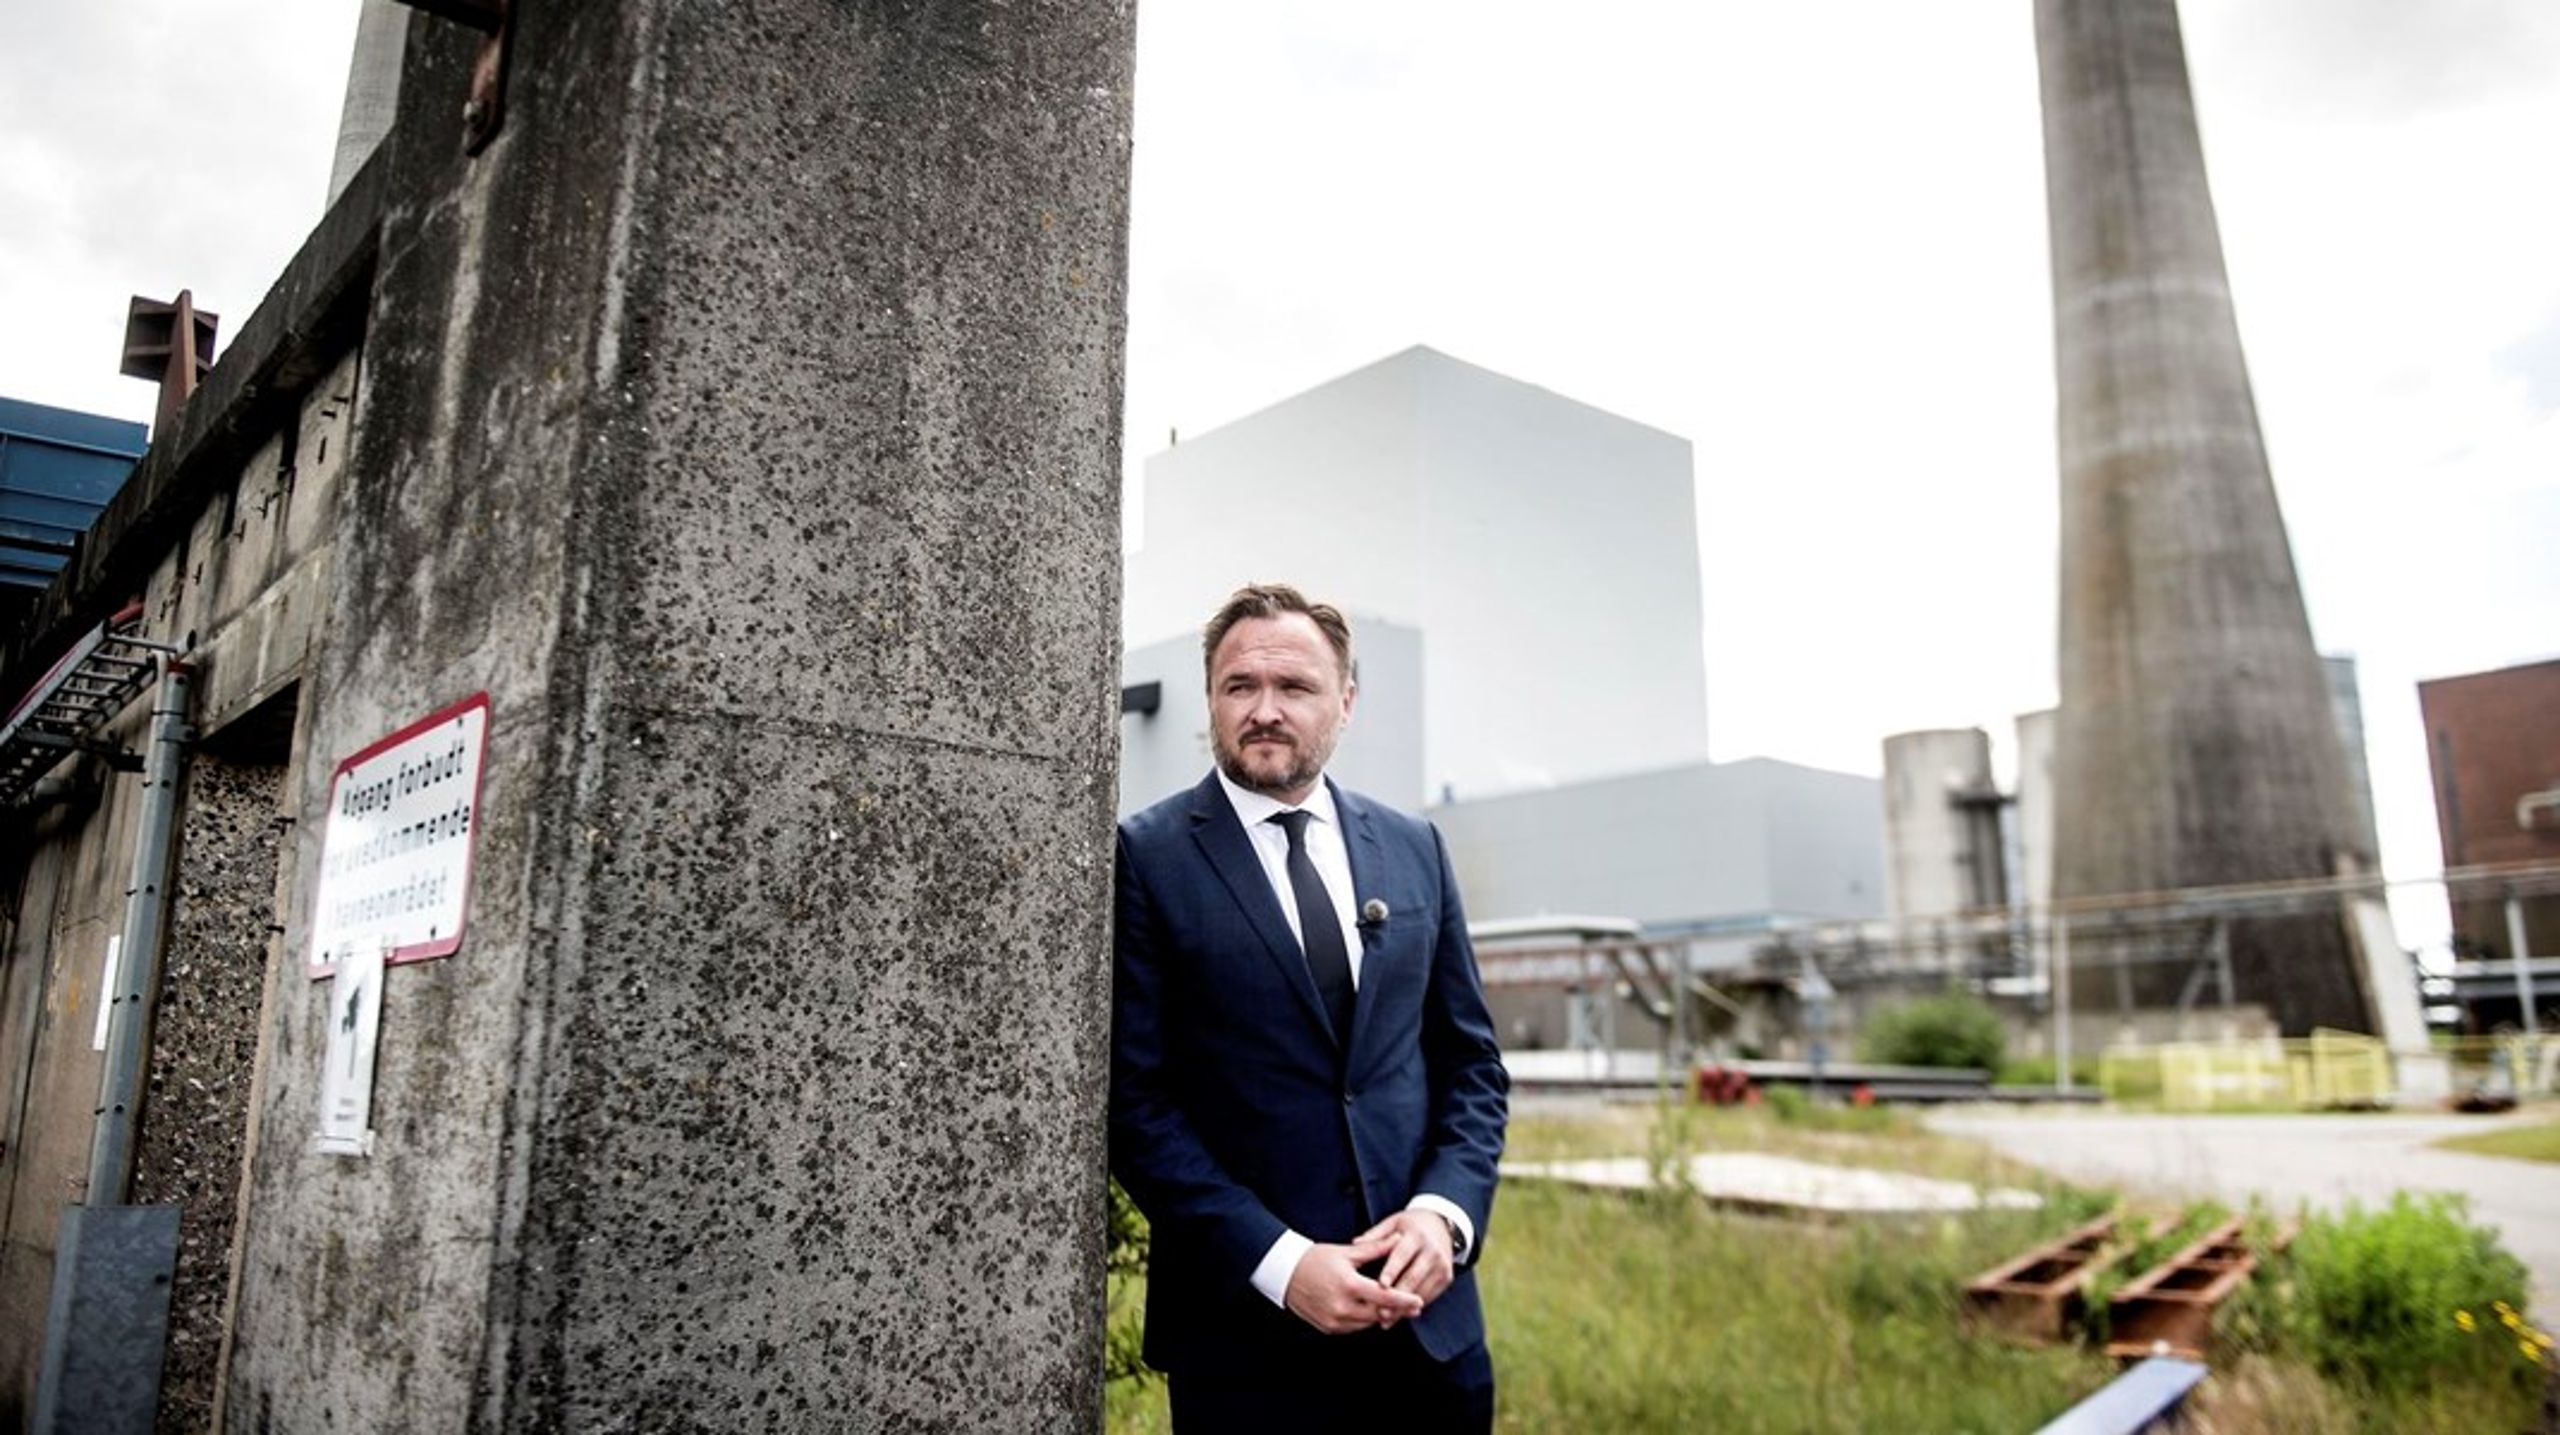 Klimaminister Dan Jørgensen ved Fynsværket, da han&nbsp;i maj 2020&nbsp;var med til at fortælle om planerne om at udfase kul der.